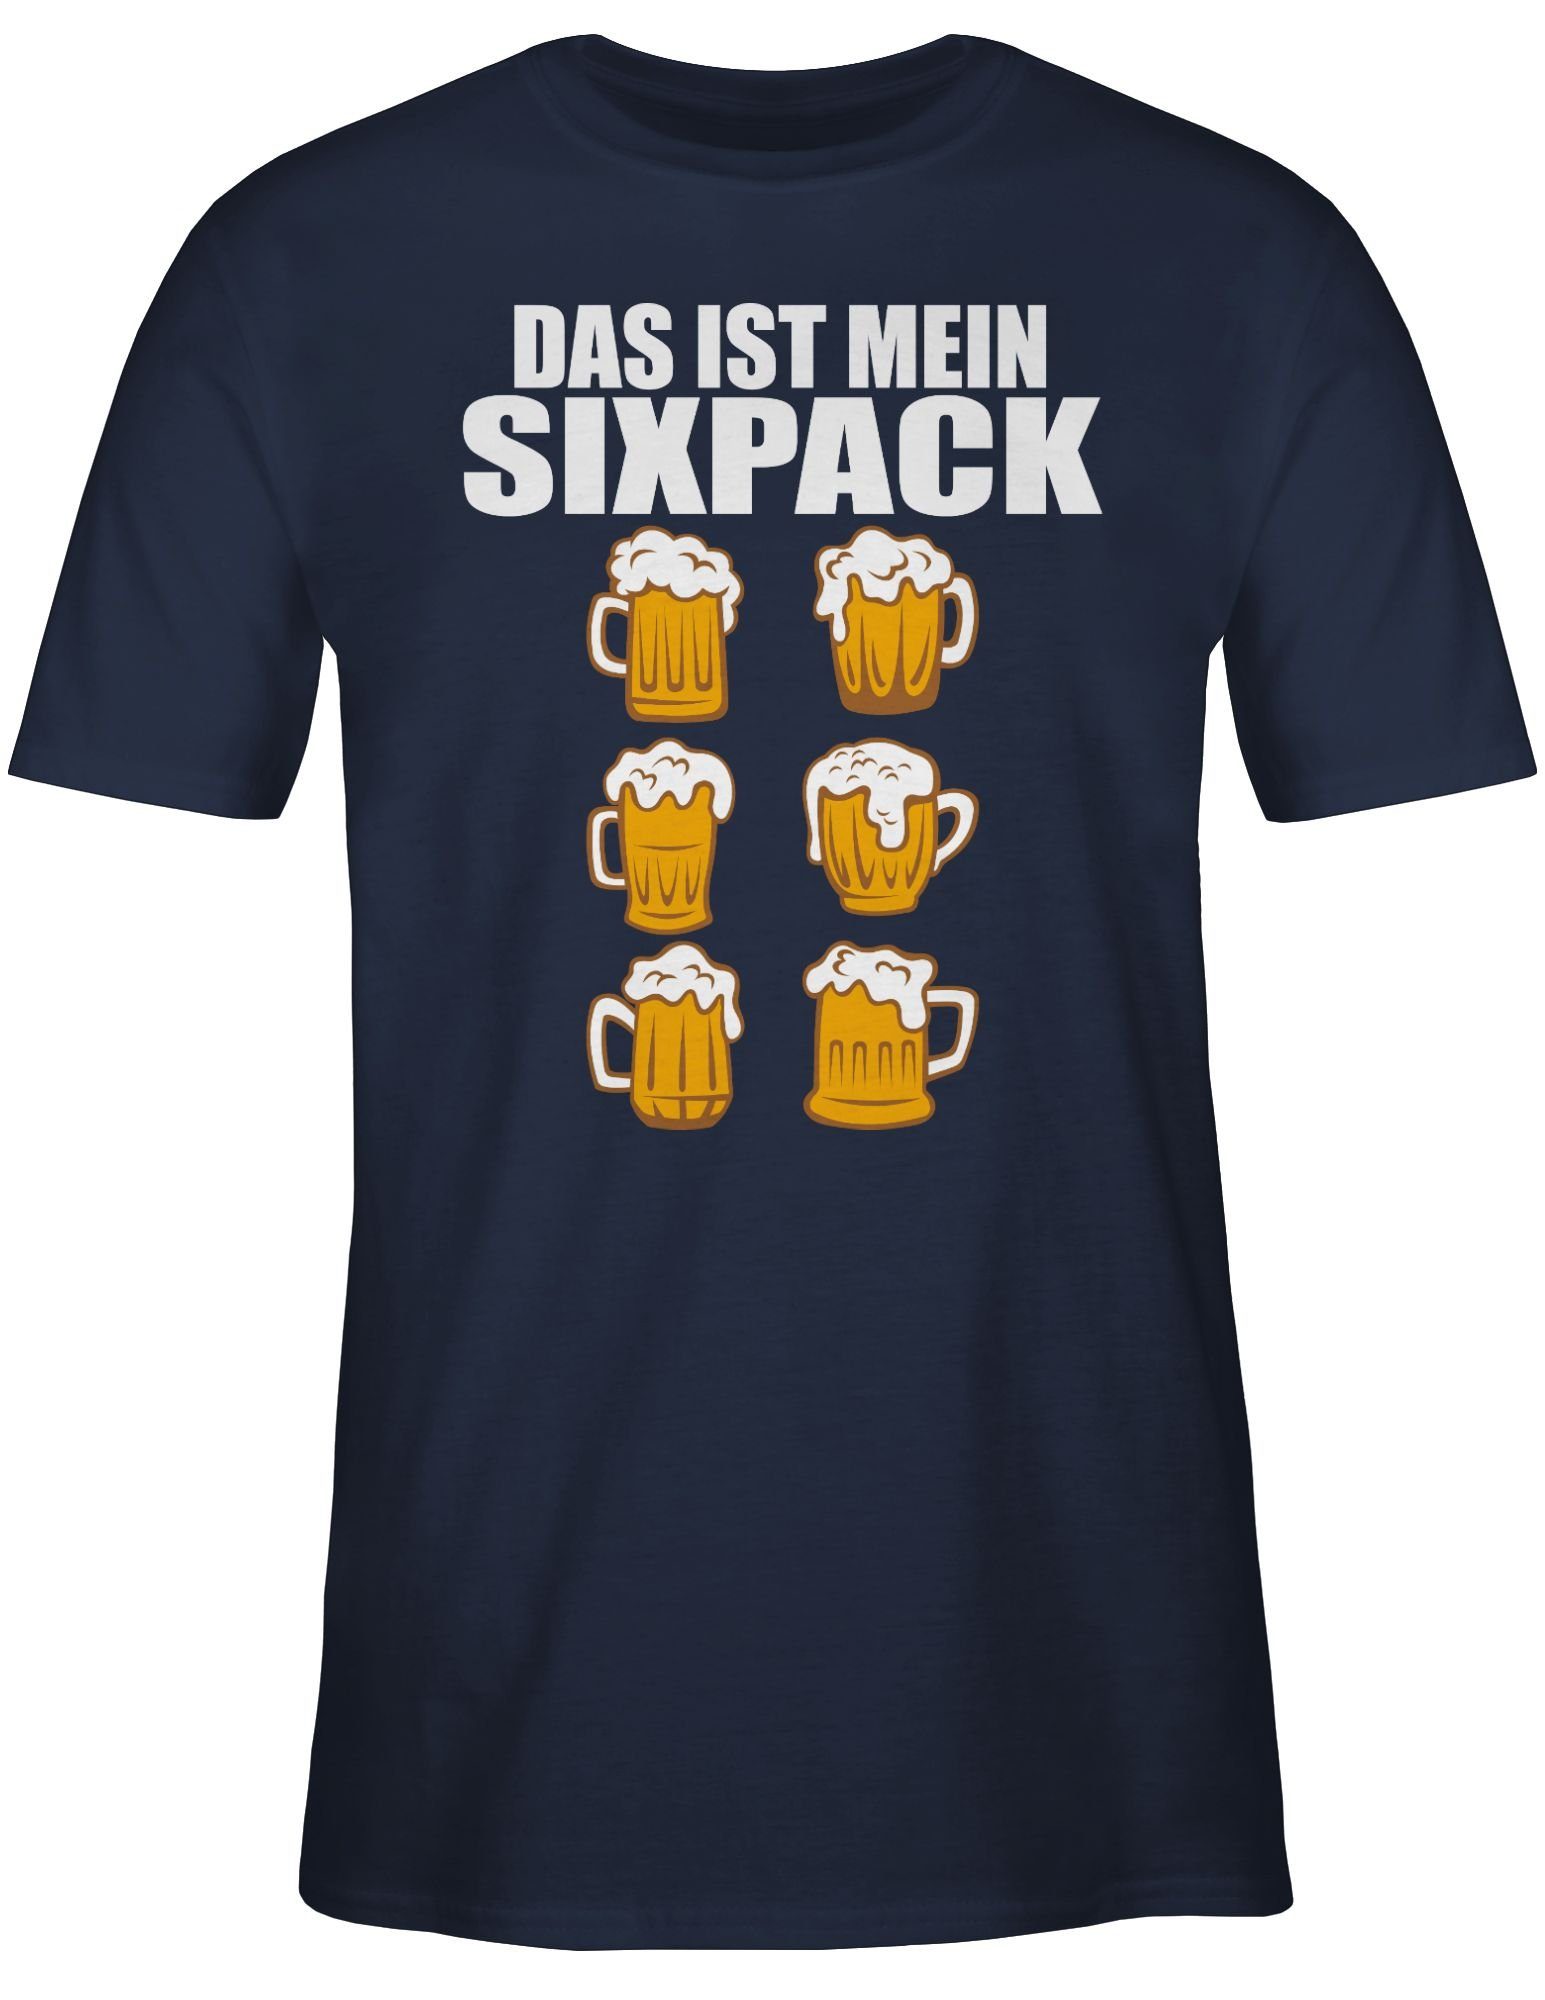 - mein ist - Das weiß Herren Oktoberfest Bier Shirtracer Blau Navy Mode T-Shirt Sixpack für 1